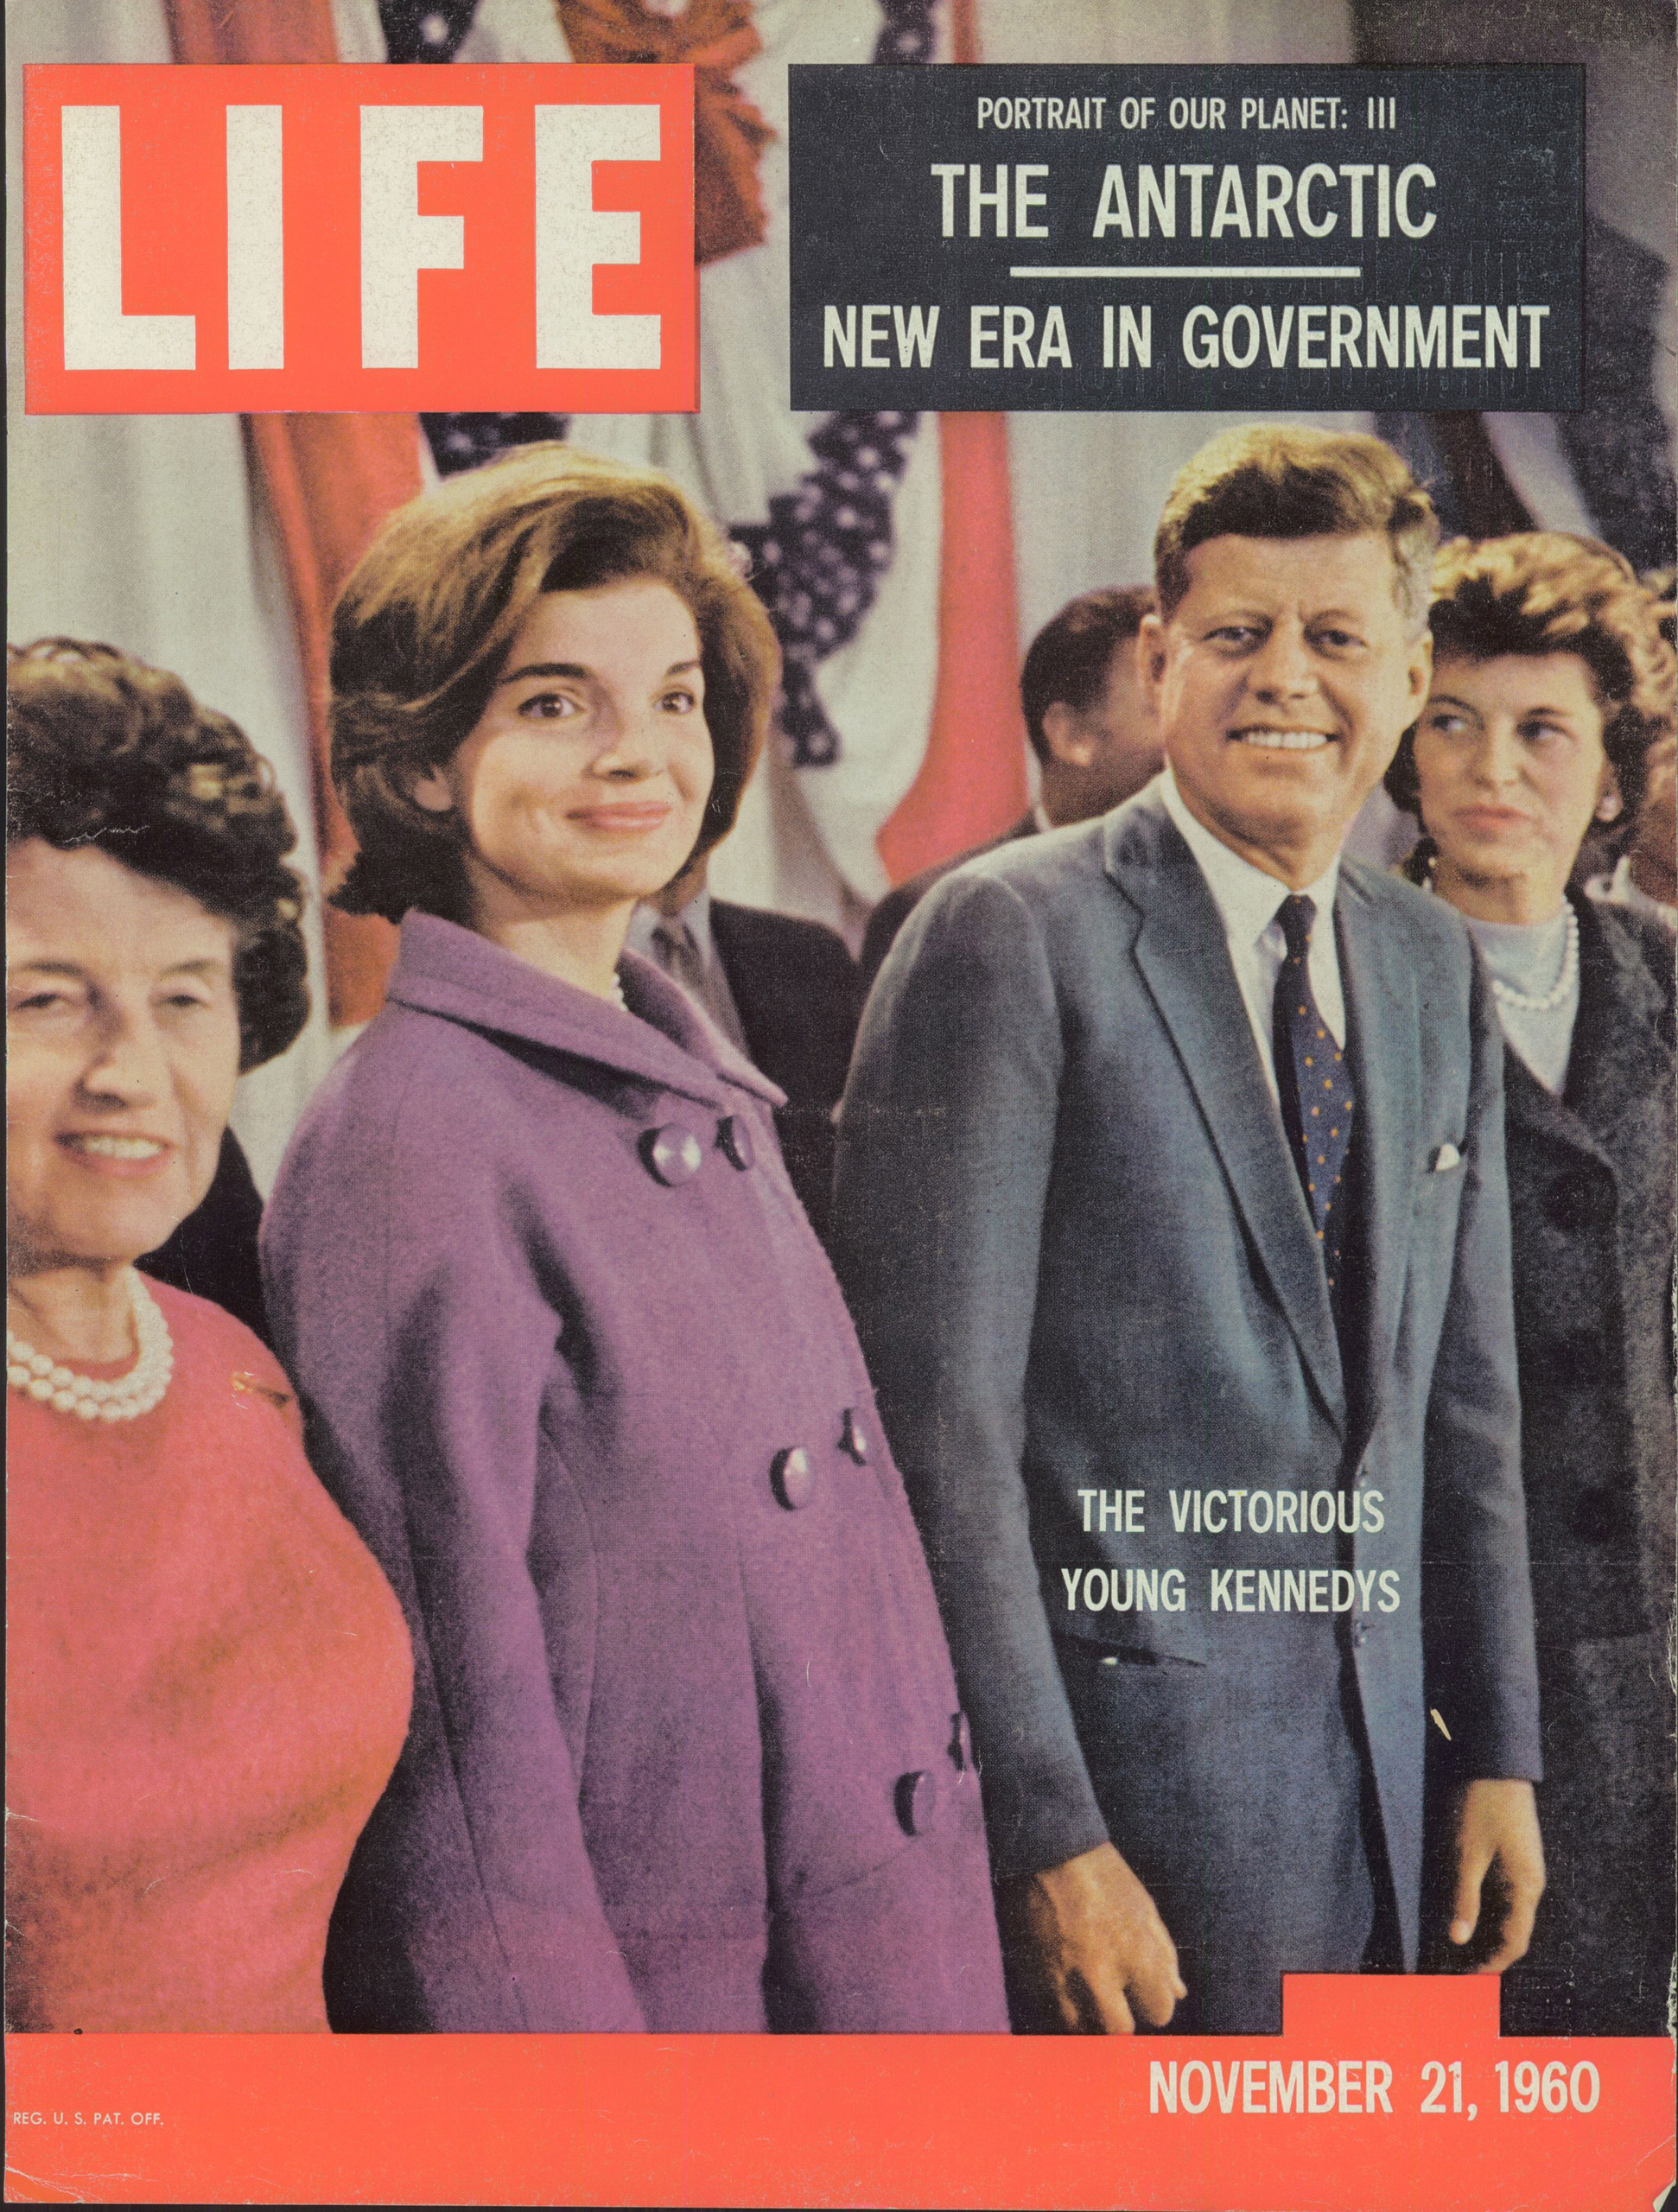 Nov. 21, 1960 cover of LIFE magazine.